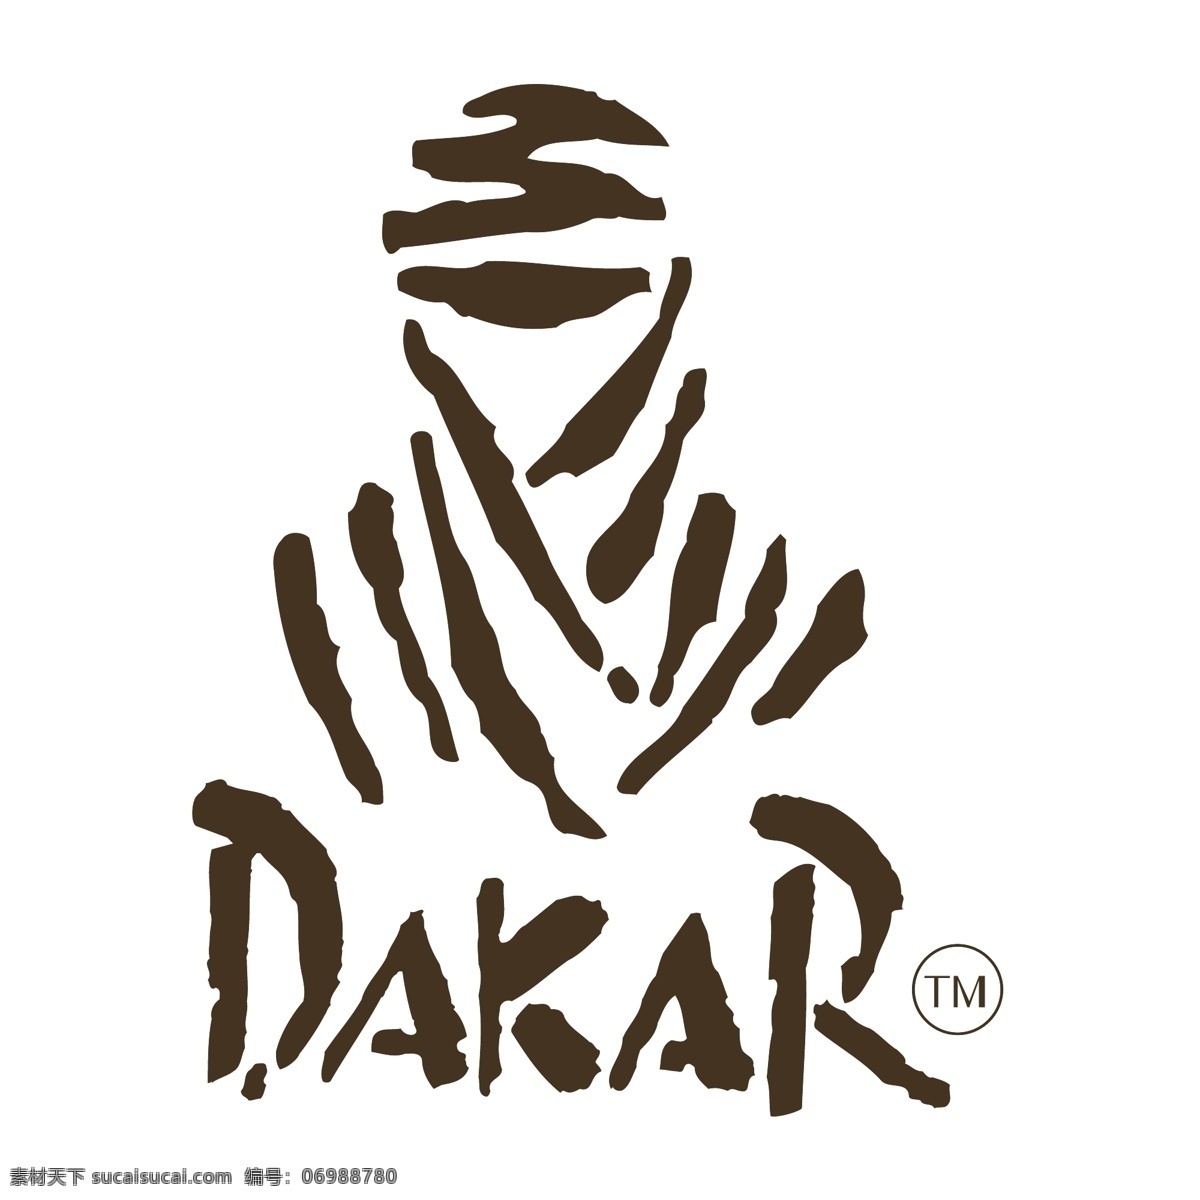 达喀尔 拉力赛 自由 标志 标识 psd源文件 logo设计